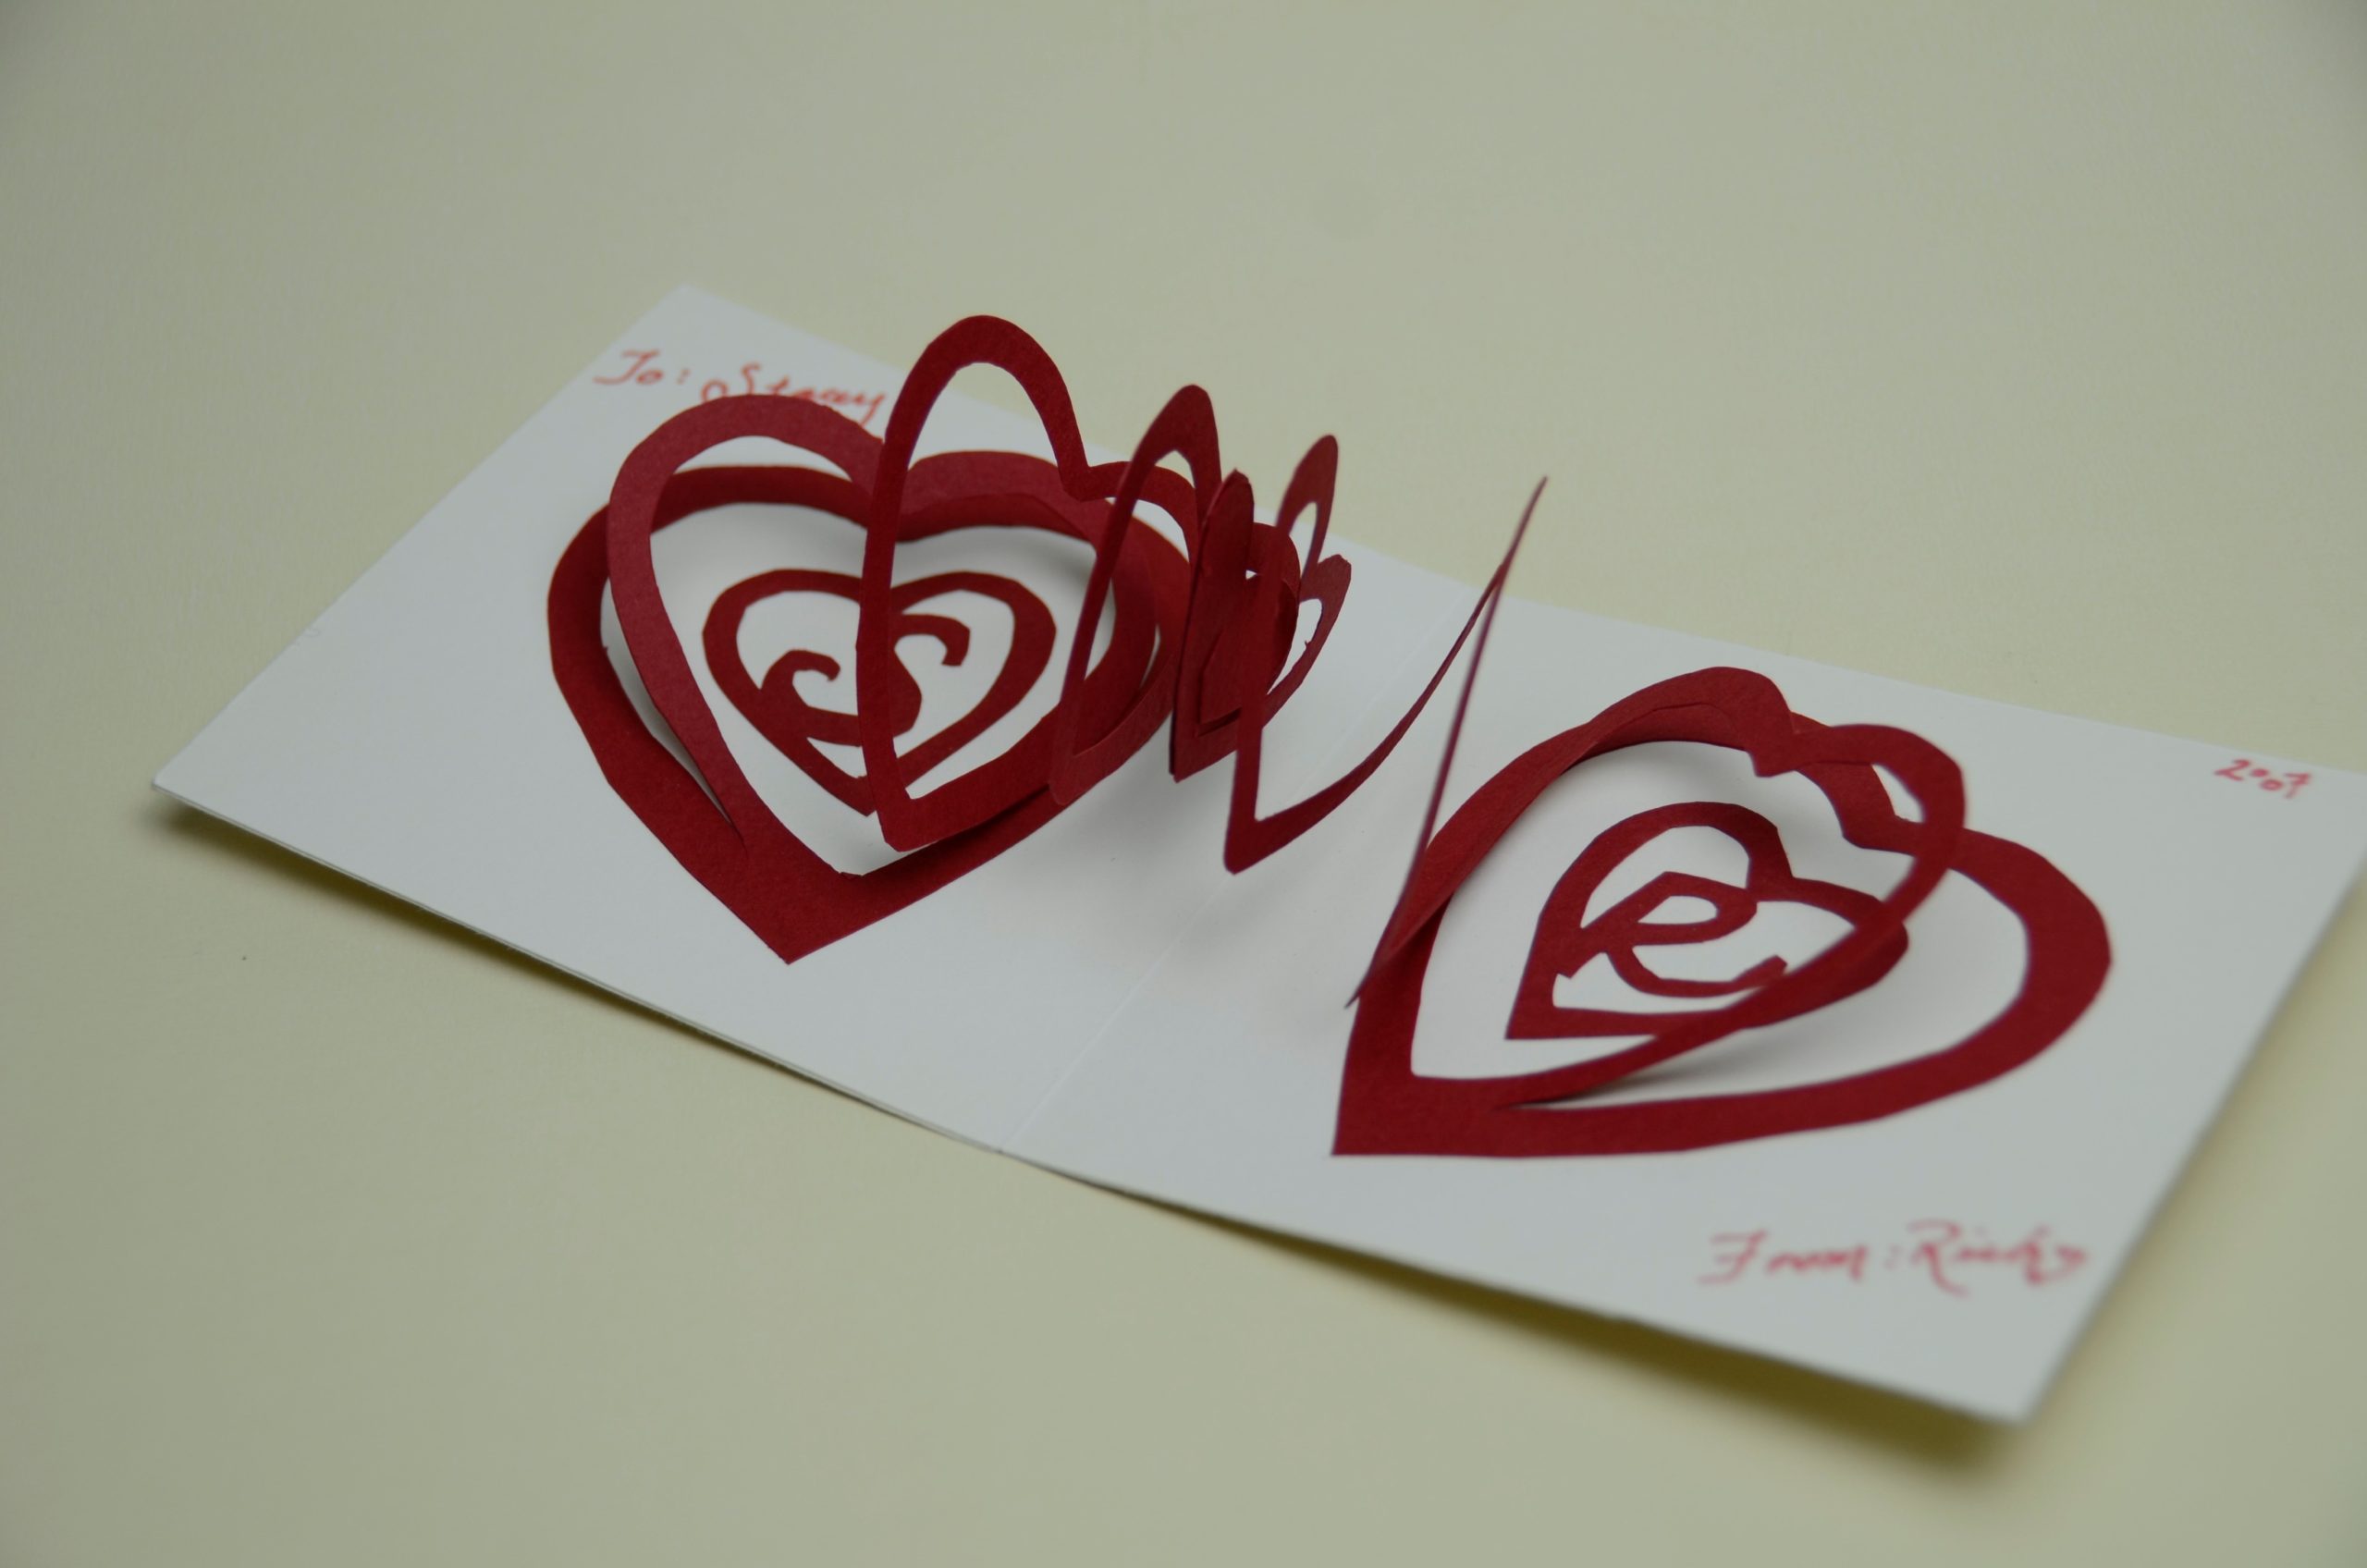 Spiral Heart Pop Up Card Template - Creative Pop Up Cards Inside 3D Heart Pop Up Card Template Pdf